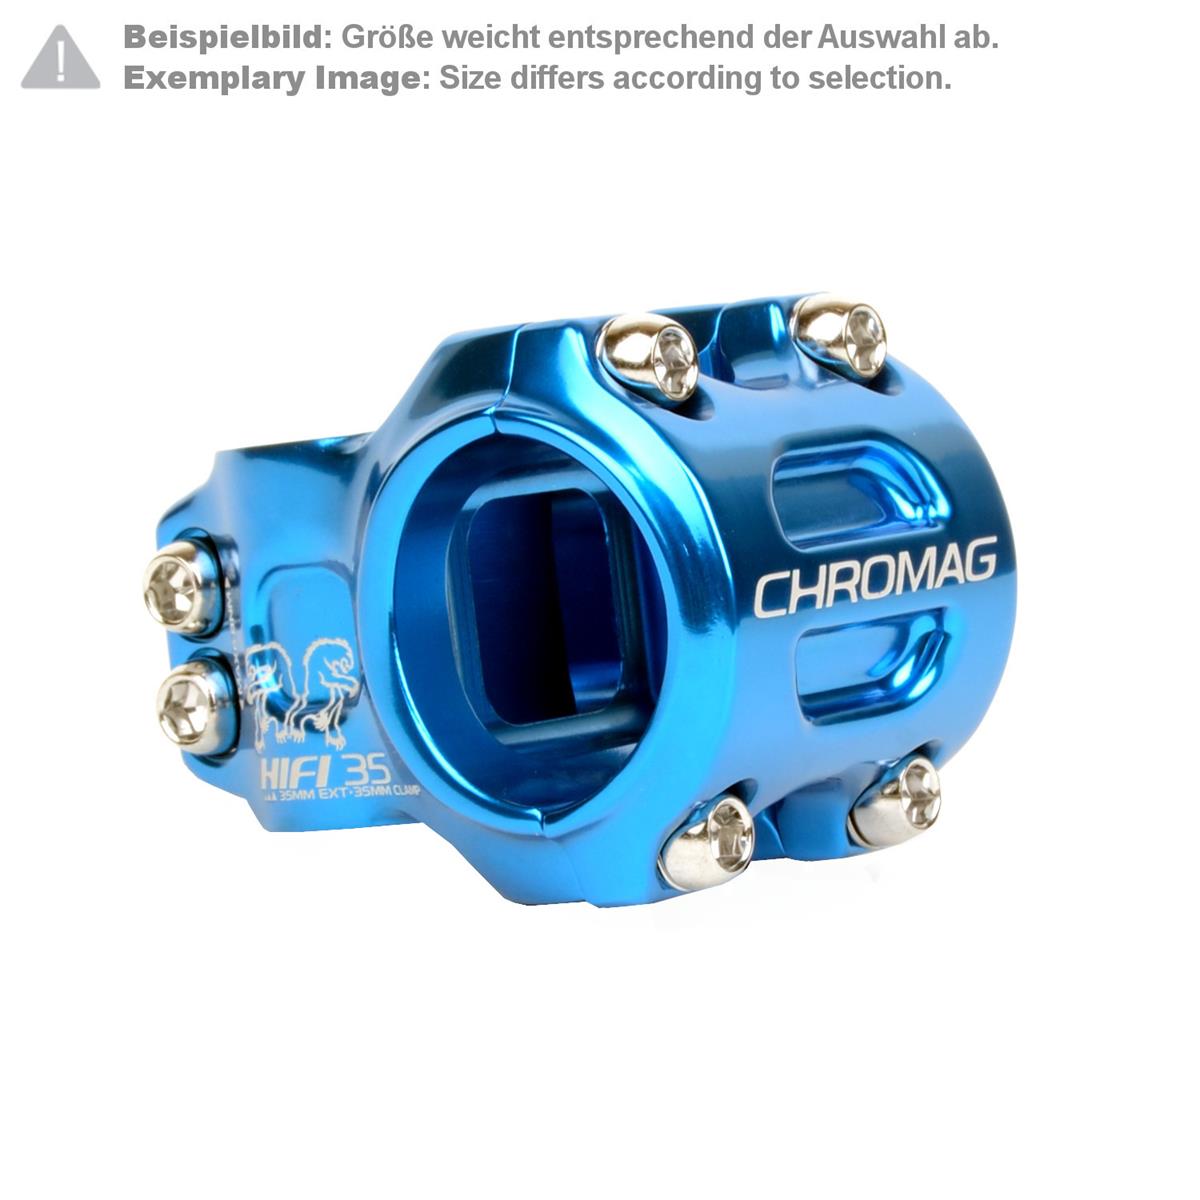 Chromag Attacco Manubrio MTB HIFI 35.0 mm, 50 mm Reach, Blu